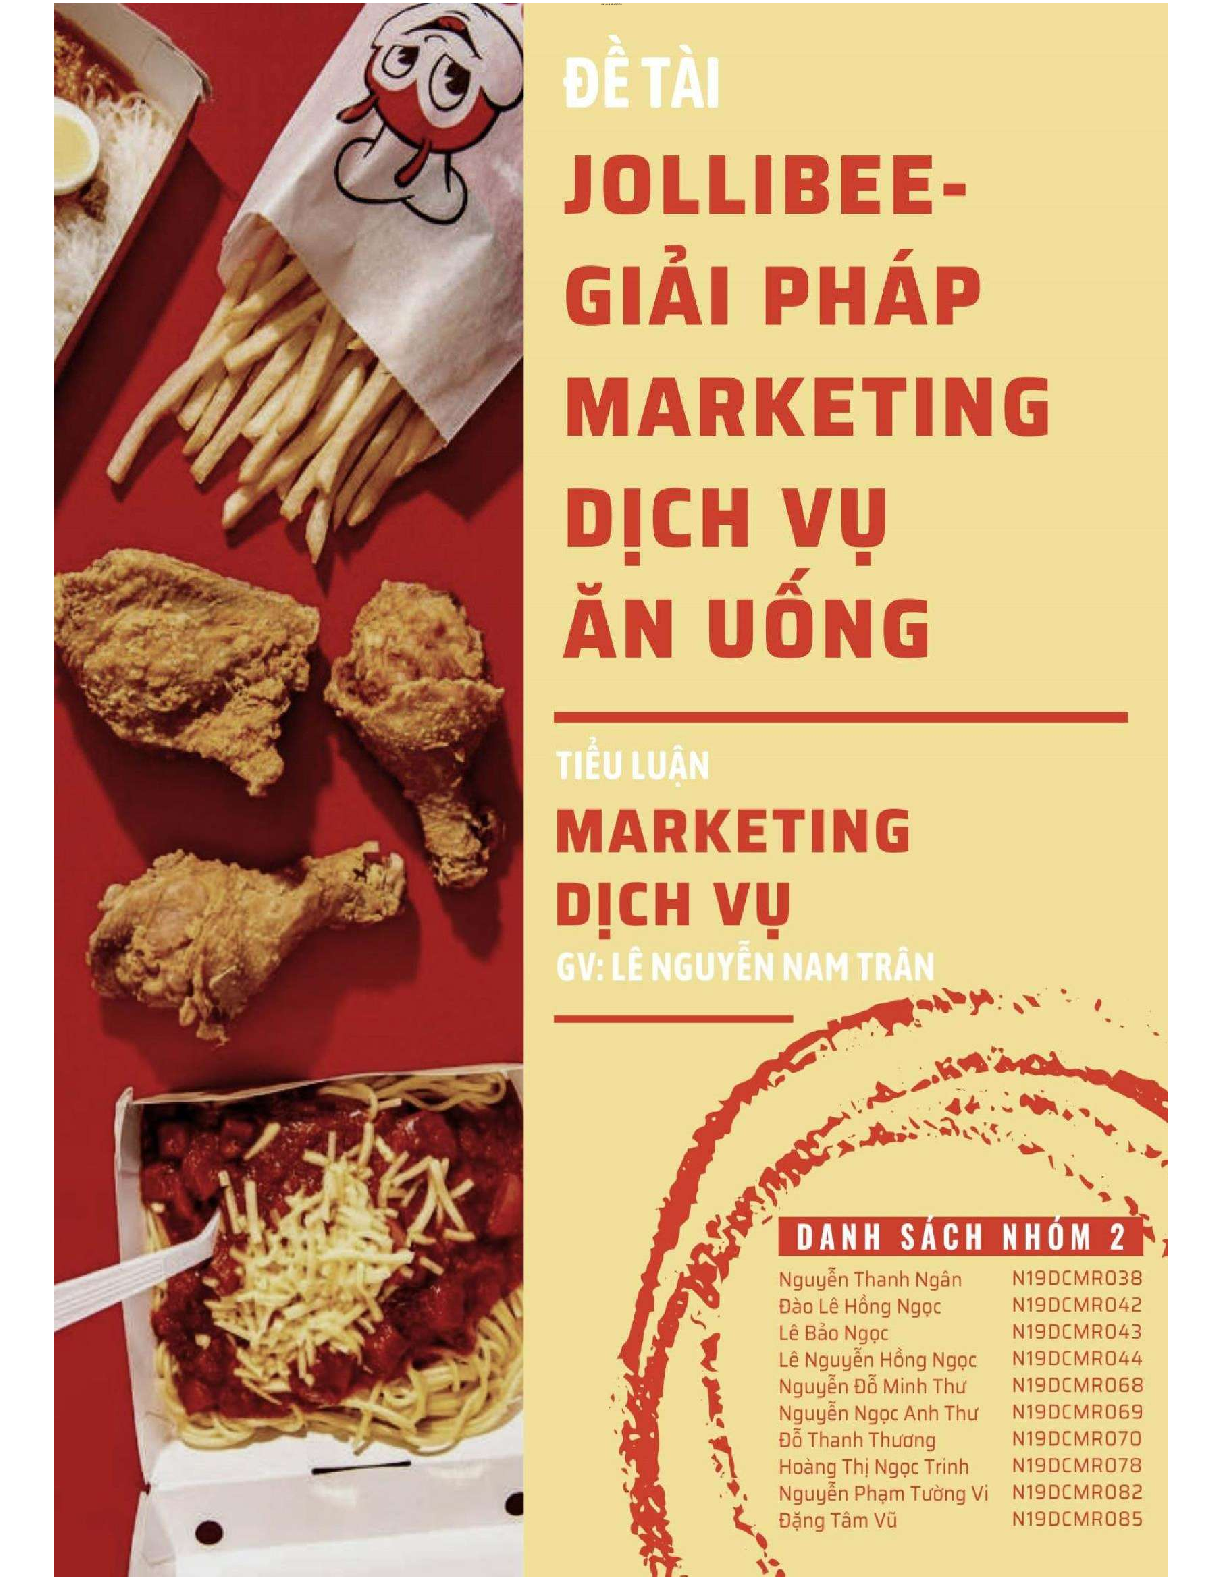 Jollibee - Giải pháp marketing dịch vụ ăn uống | Tiểu luận môn Marketing dịch vụ | PTIT (trang 1)